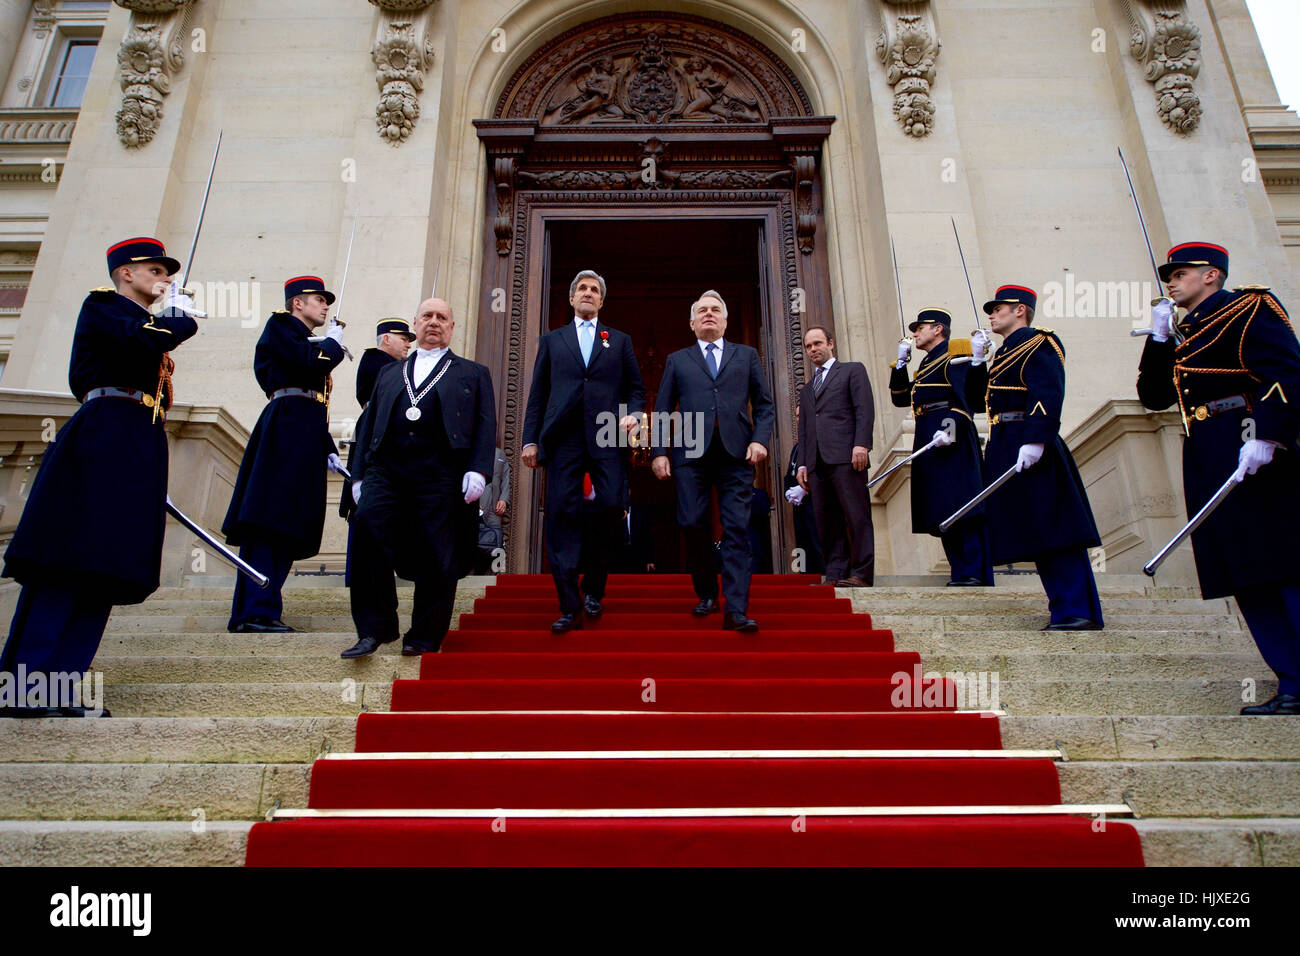 US-Außenminister John Kerry und der französische Außenminister Jean-Marc Ayrault verlassen des Quai d ' Orsay - des französischen Außenministeriums - in Paris, Frankreich, nach Ayrault Sekretär im Rahmen einer Feierstunde am 10. Dezember 2016 Großoffizier der Ehrenlegion, die zweit-höchste Ebene des französischen Award, ausgezeichnet. Stockfoto